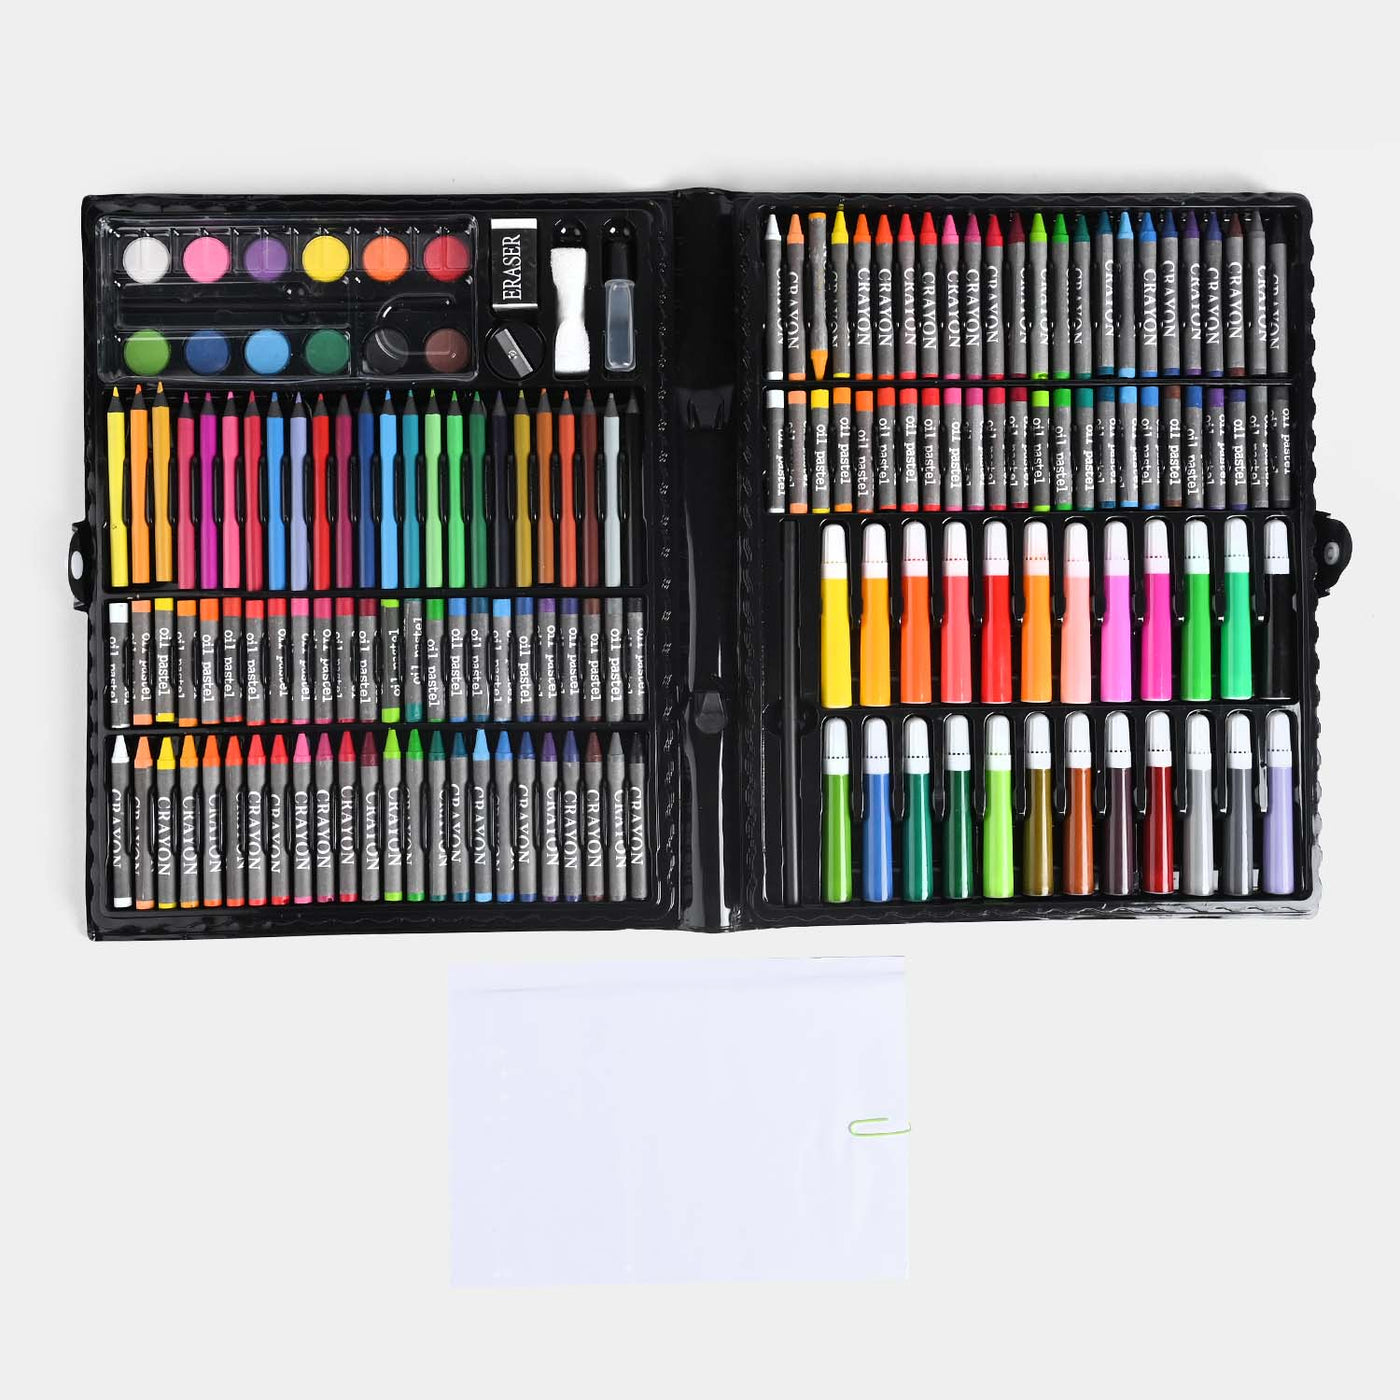 Color Kit 168Pcs for kids